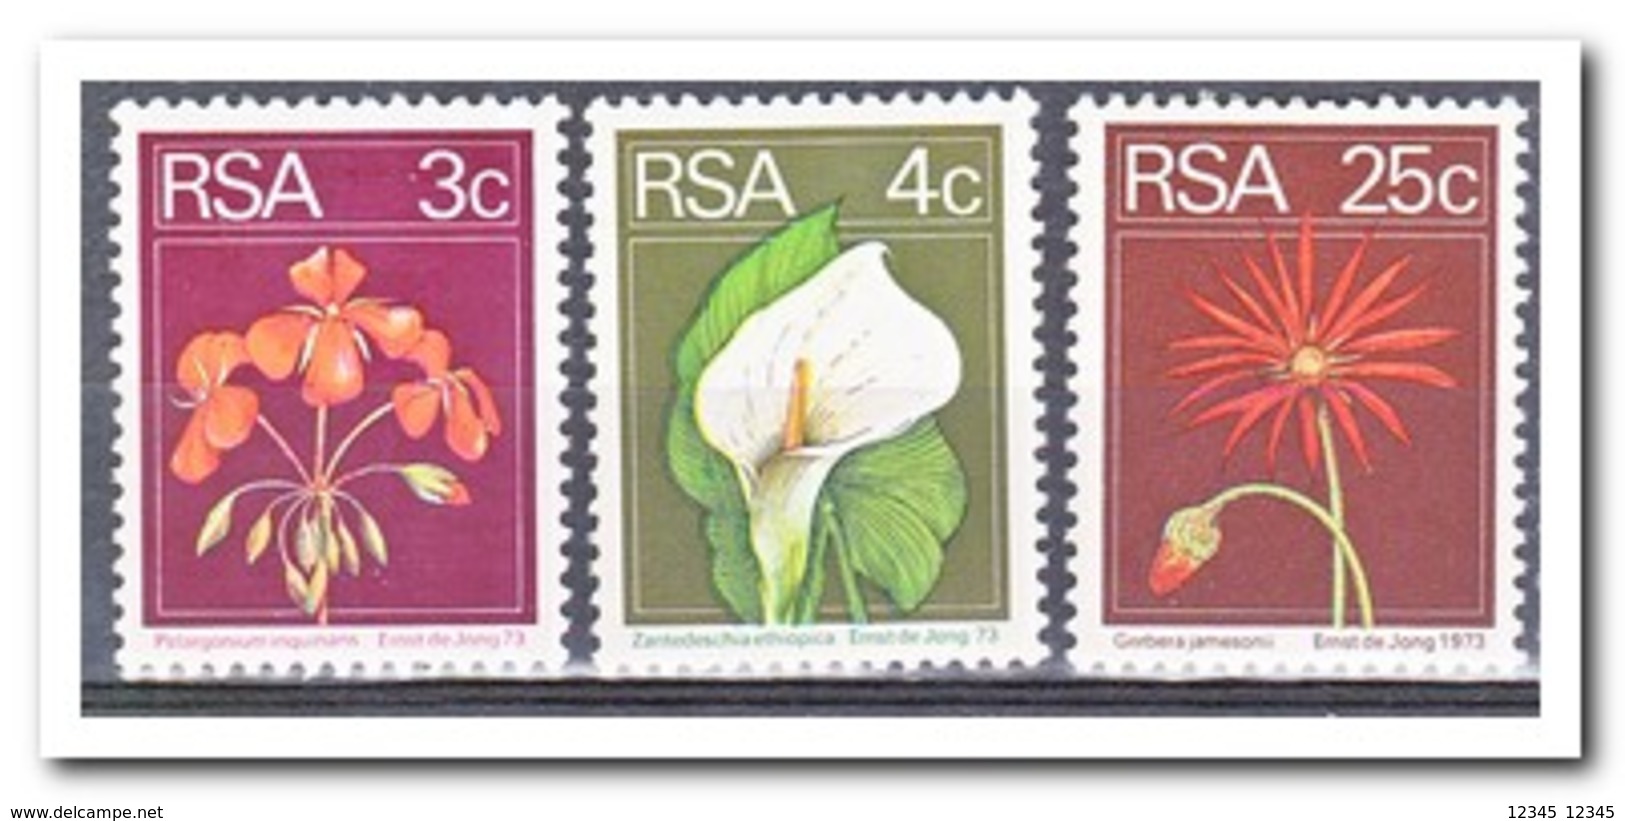 Zuid Afrika 1974, Postfris MNH, Flowers - Ongebruikt